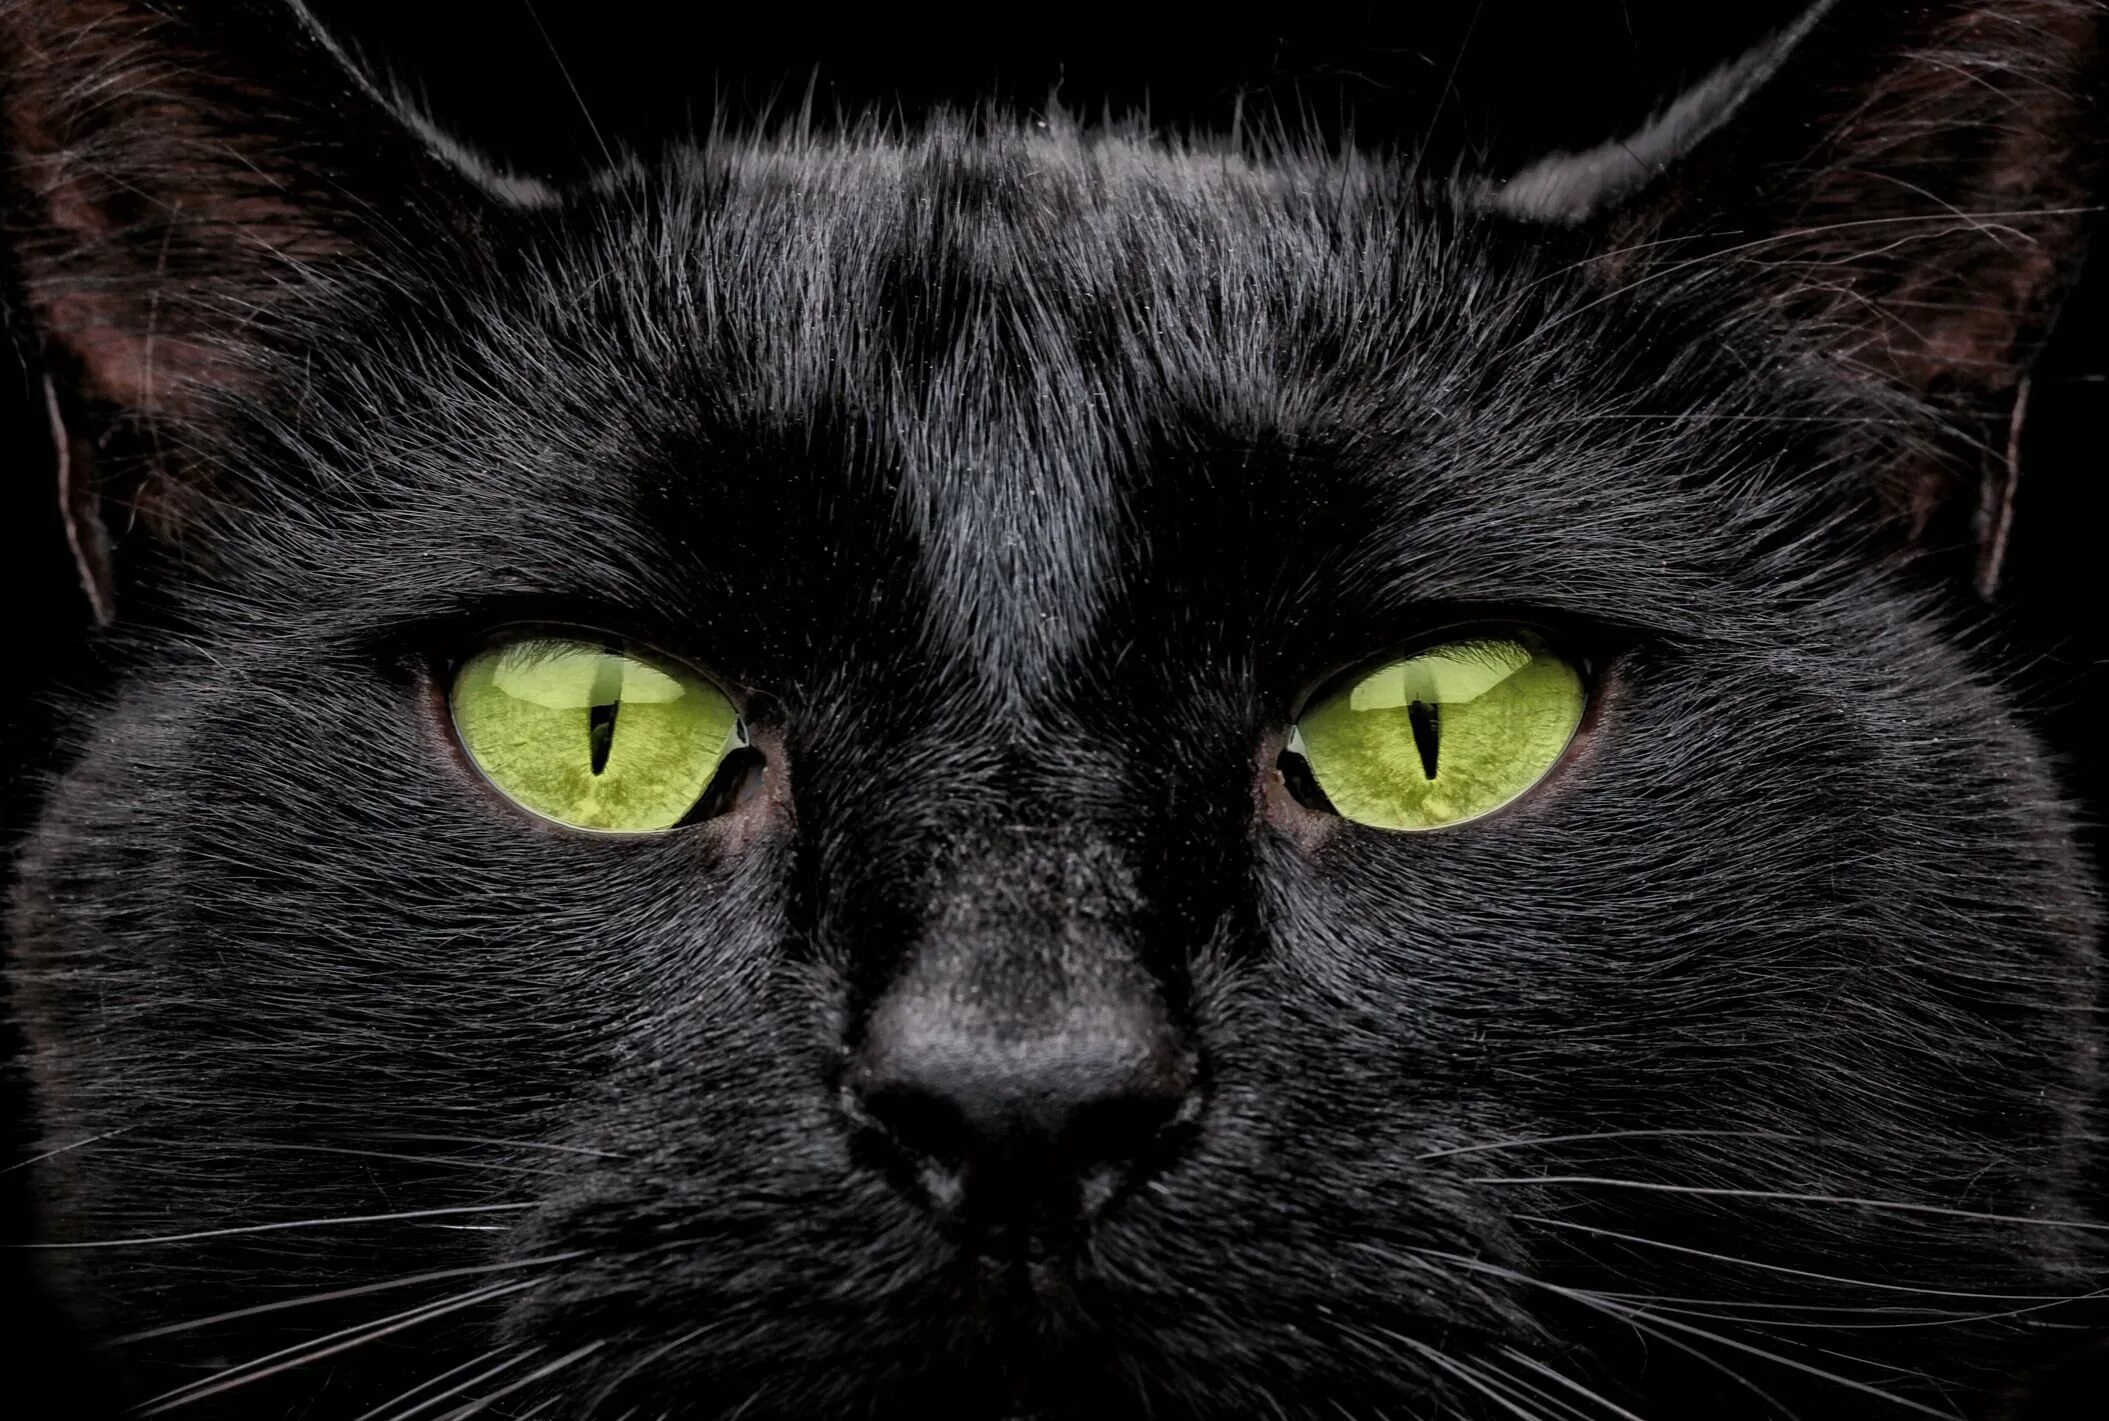 Black cat eye. Чёрный кот с зелёными глазами. Черная кошка с зелеными глазами. Кошка с зелеными глазами. Чёрные коты с зелёными глазами.